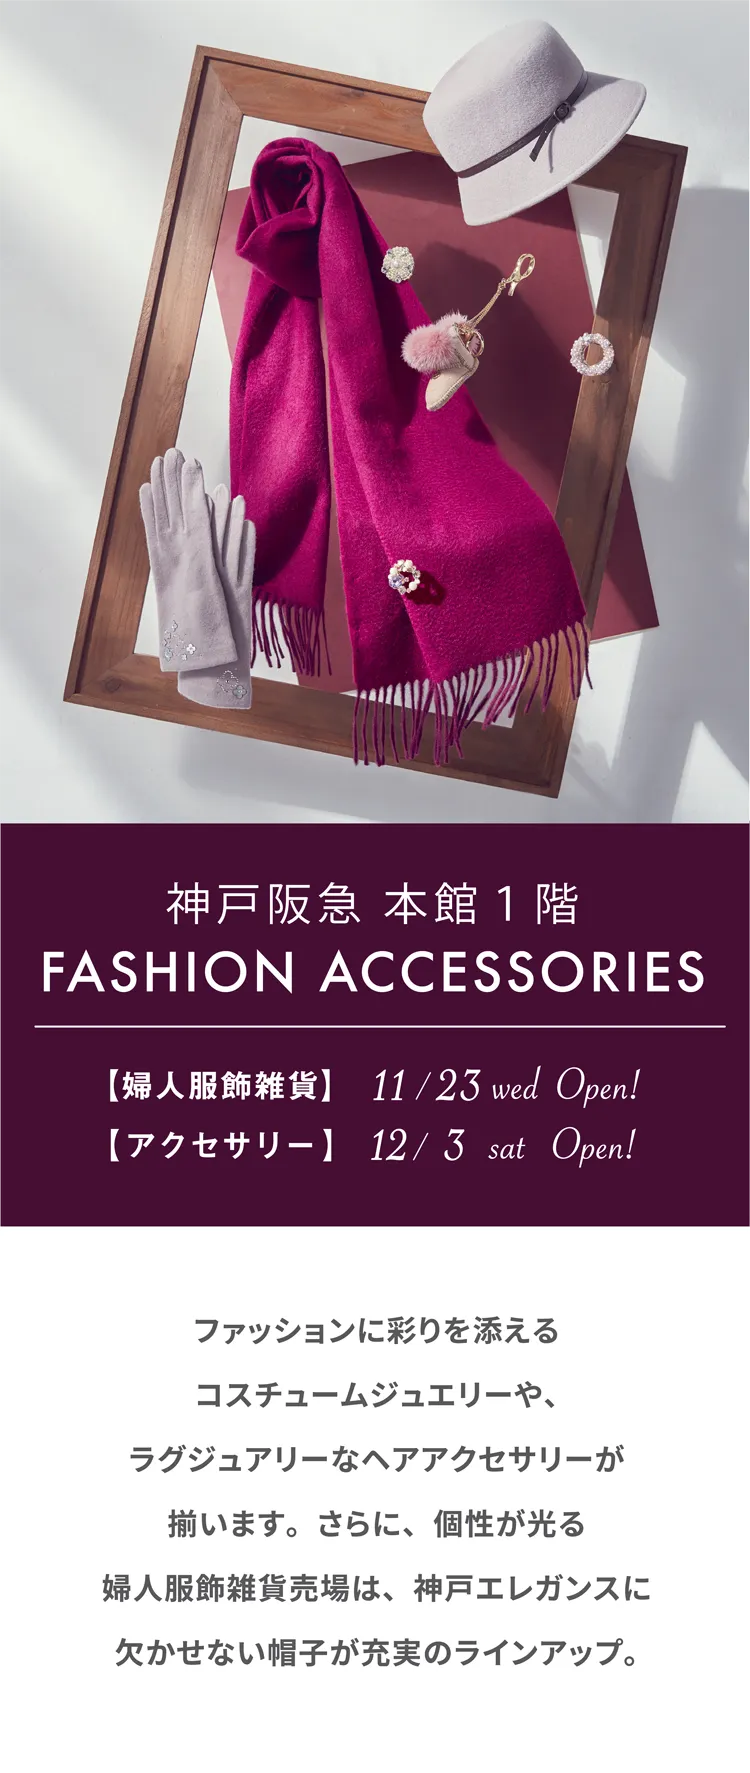 神戸阪急 本館1階 FASHION ACCESORIES 【婦人服飾雑貨】11/23 wed Open! 【アクセサリー】12/3 sat Open! ファッションに彩りを添えるコスチュームジュエリーや、ラグジュアリーなヘアアクセサリーが揃います。さらに、個性が光る婦人服飾雑貨売場は、神戸エレガンスに欠かせない帽子が充実のラインアップ。